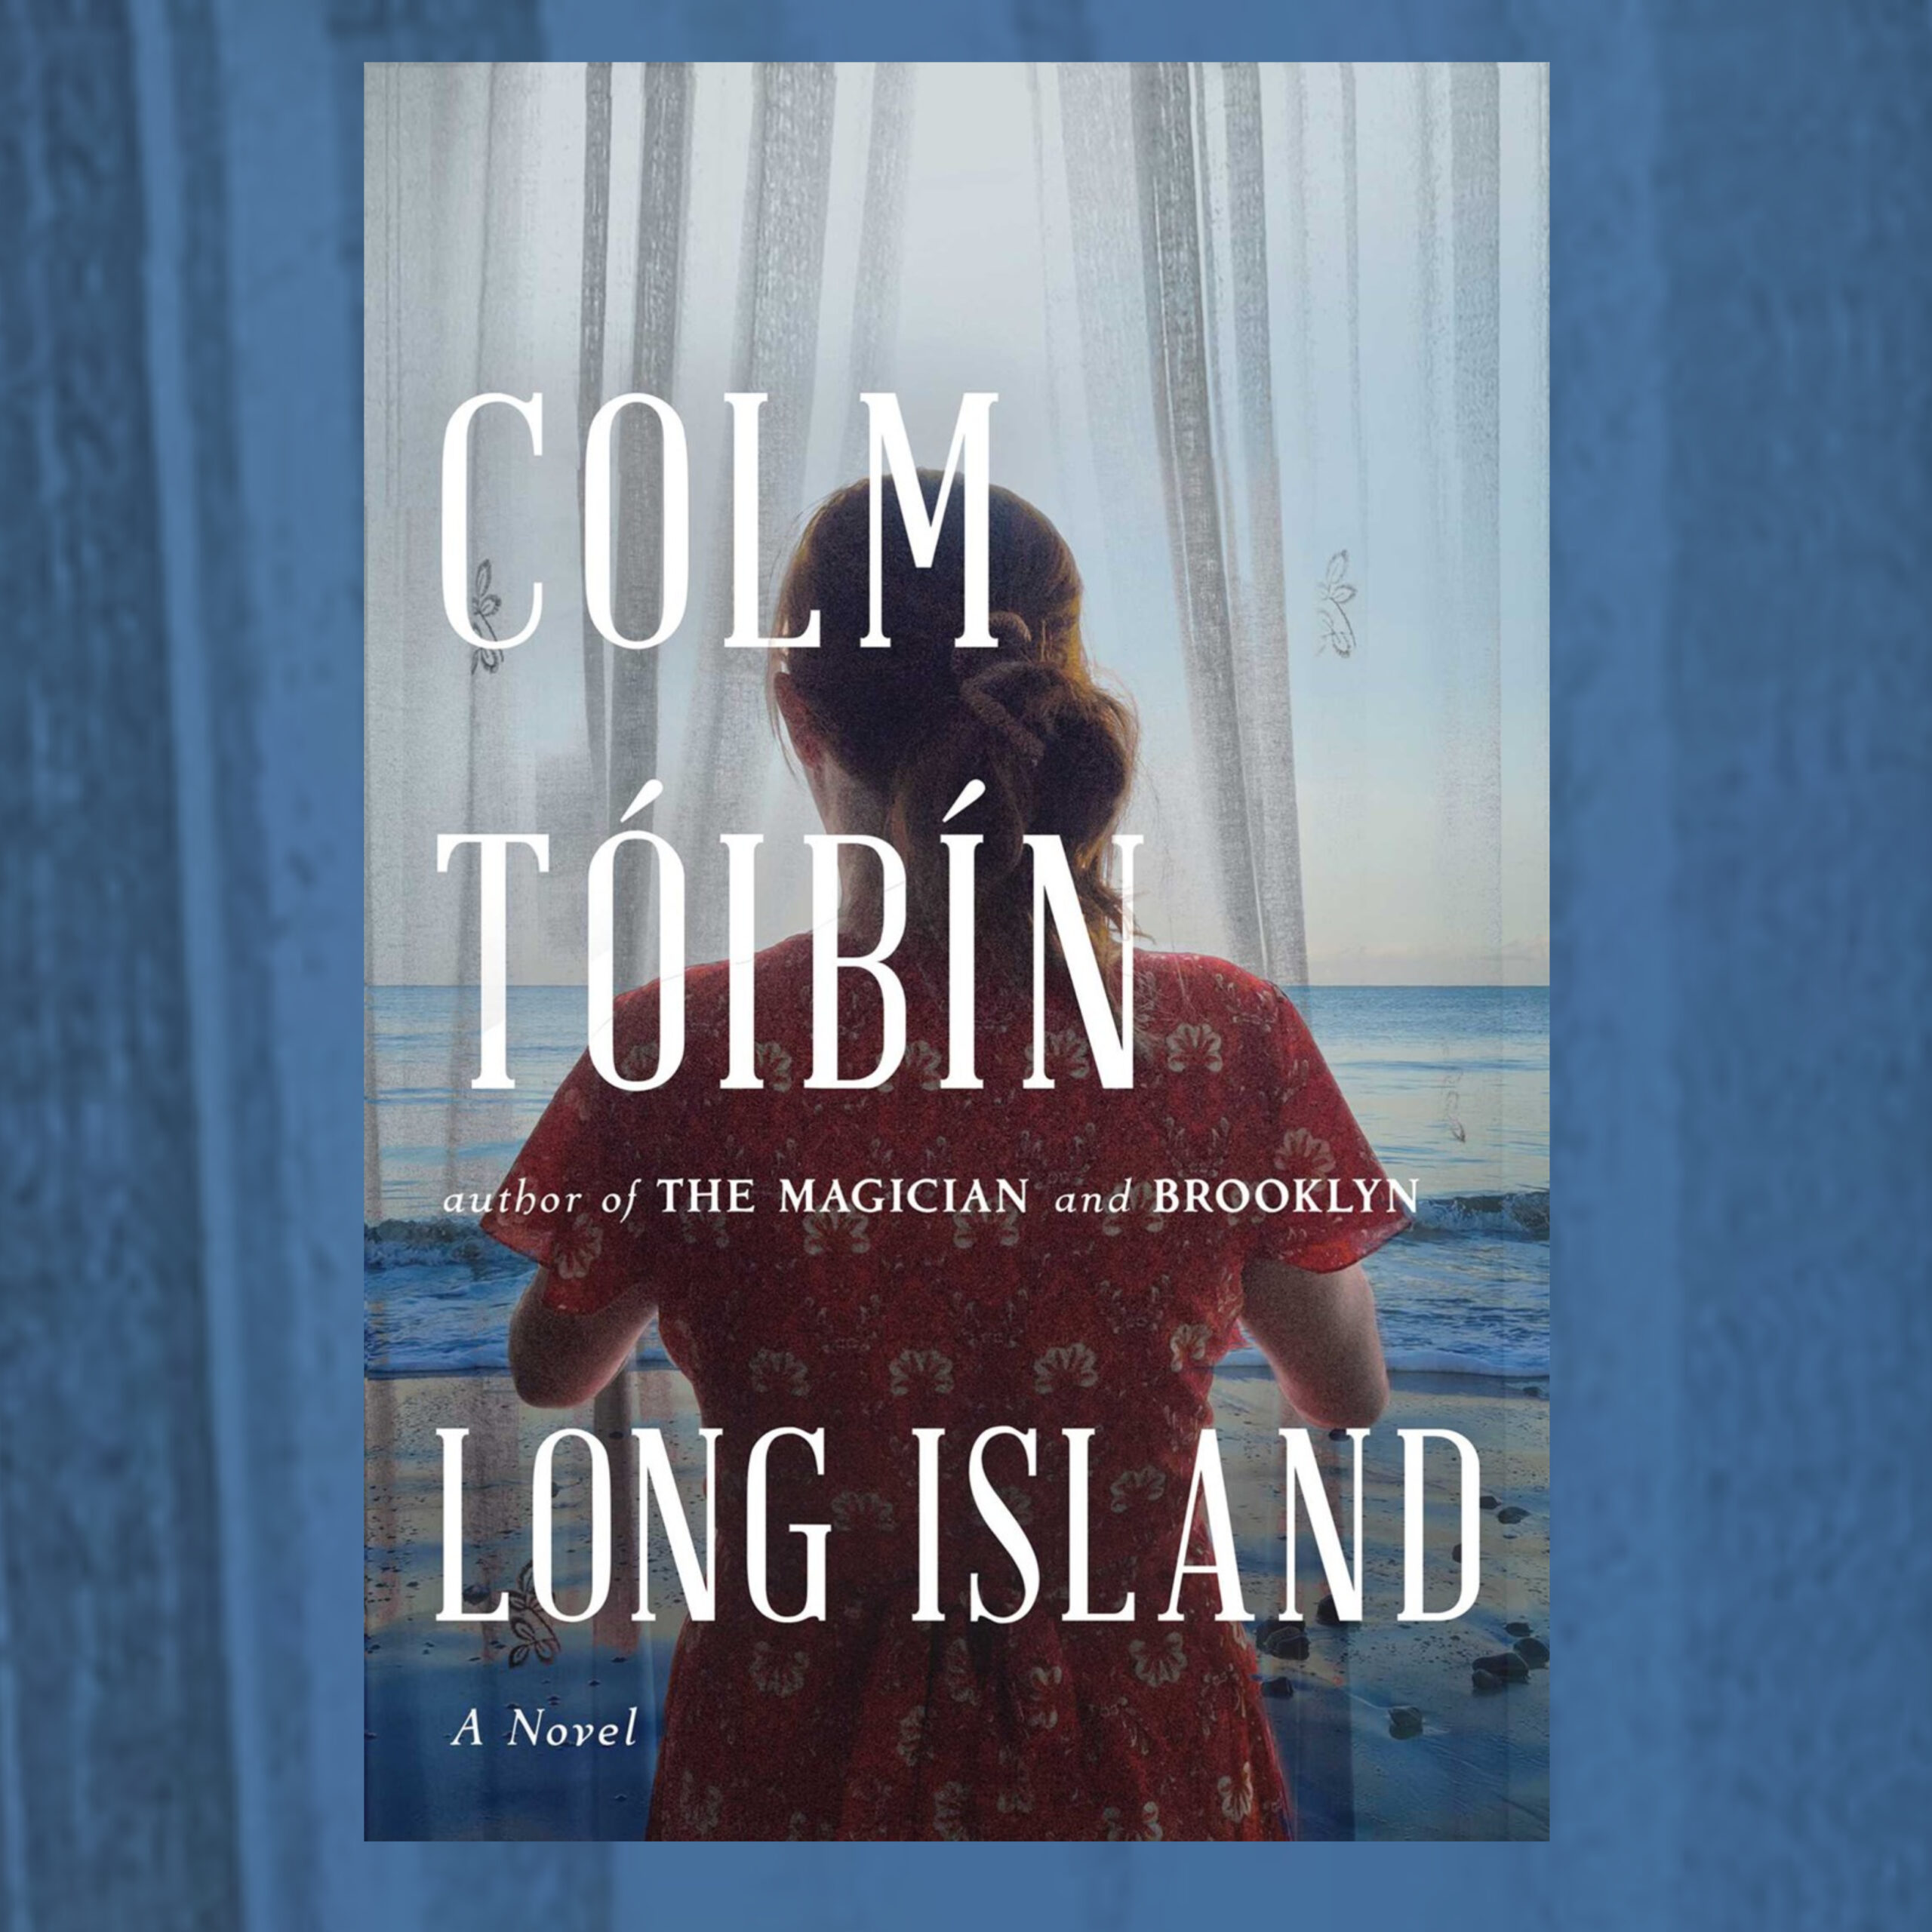 The Book Show | Colm Tóibín - Long Island